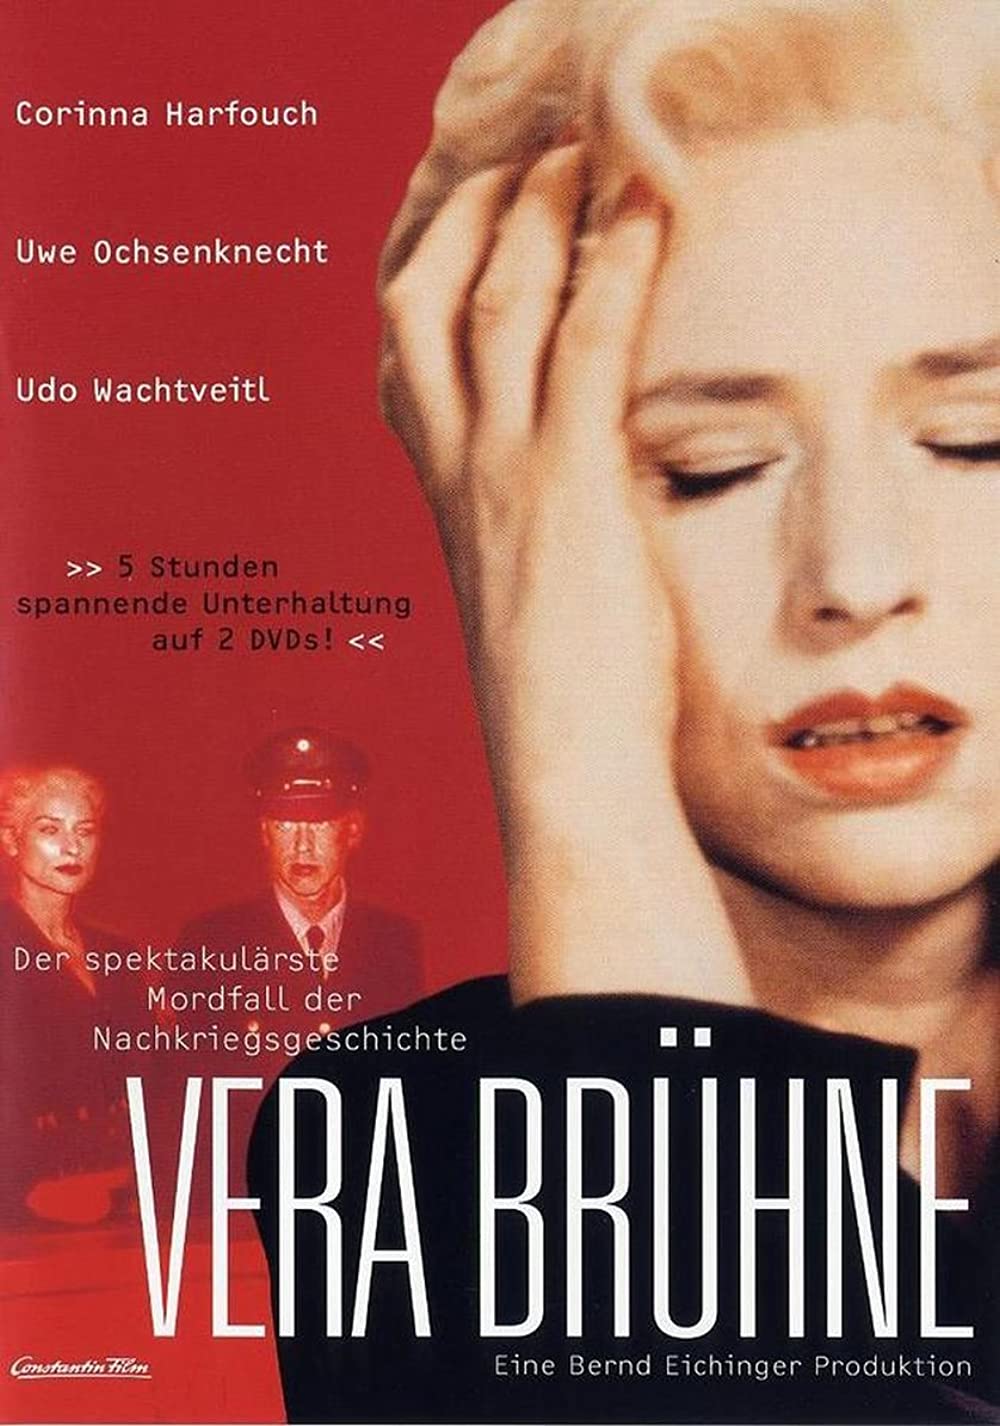 Filmbeschreibung zu Vera Brühne